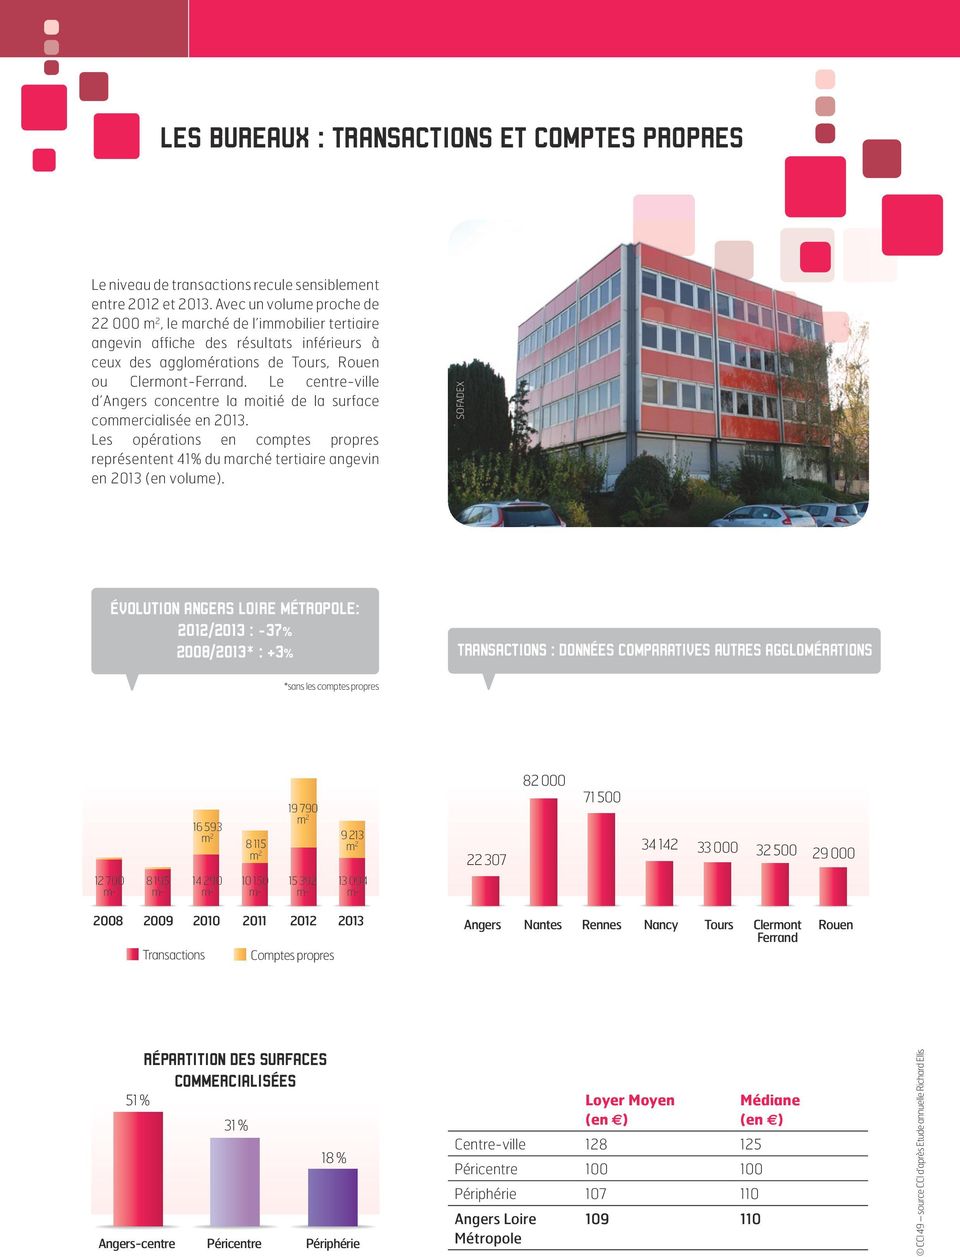 Le centre-ville d Angers concentre la moitié de la surface commercialisée en 2013. Les opérations en comptes propres représentent 41% du marché tertiaire angevin en 2013 (en volume).